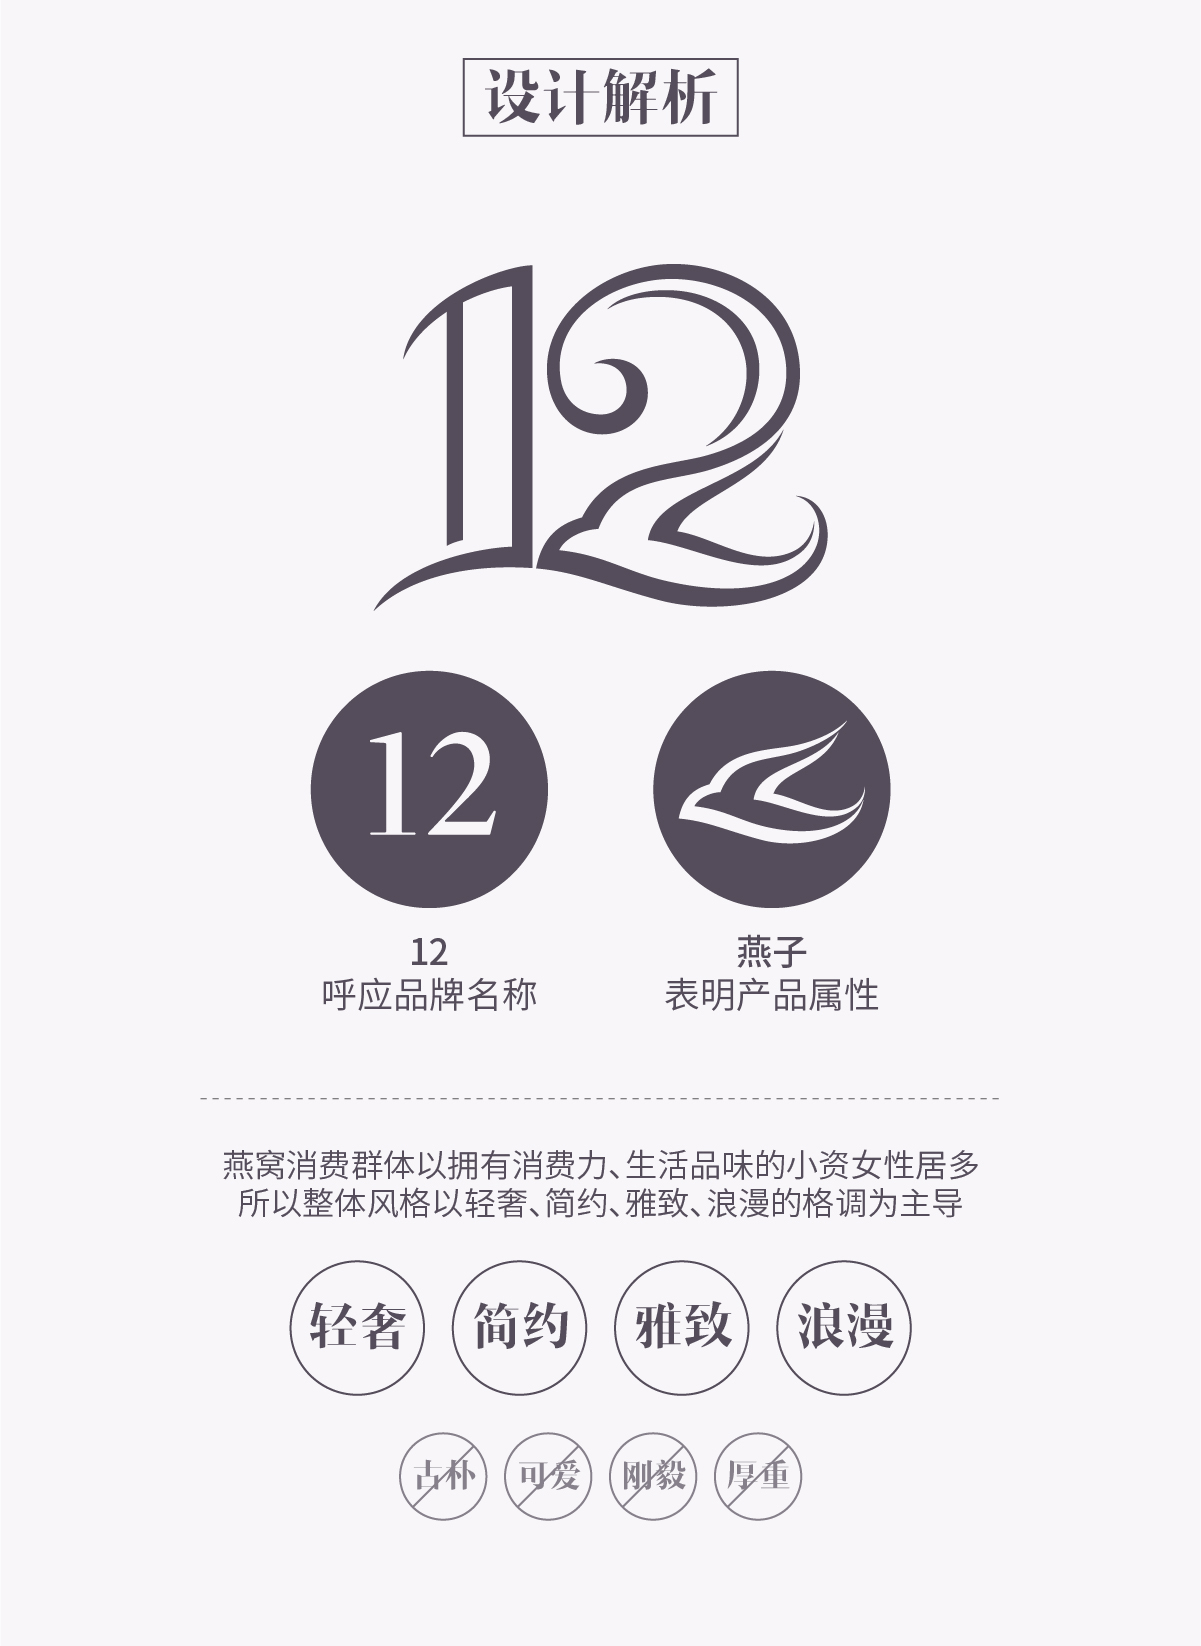 十二夏天-即食燕窝品牌Logo图3